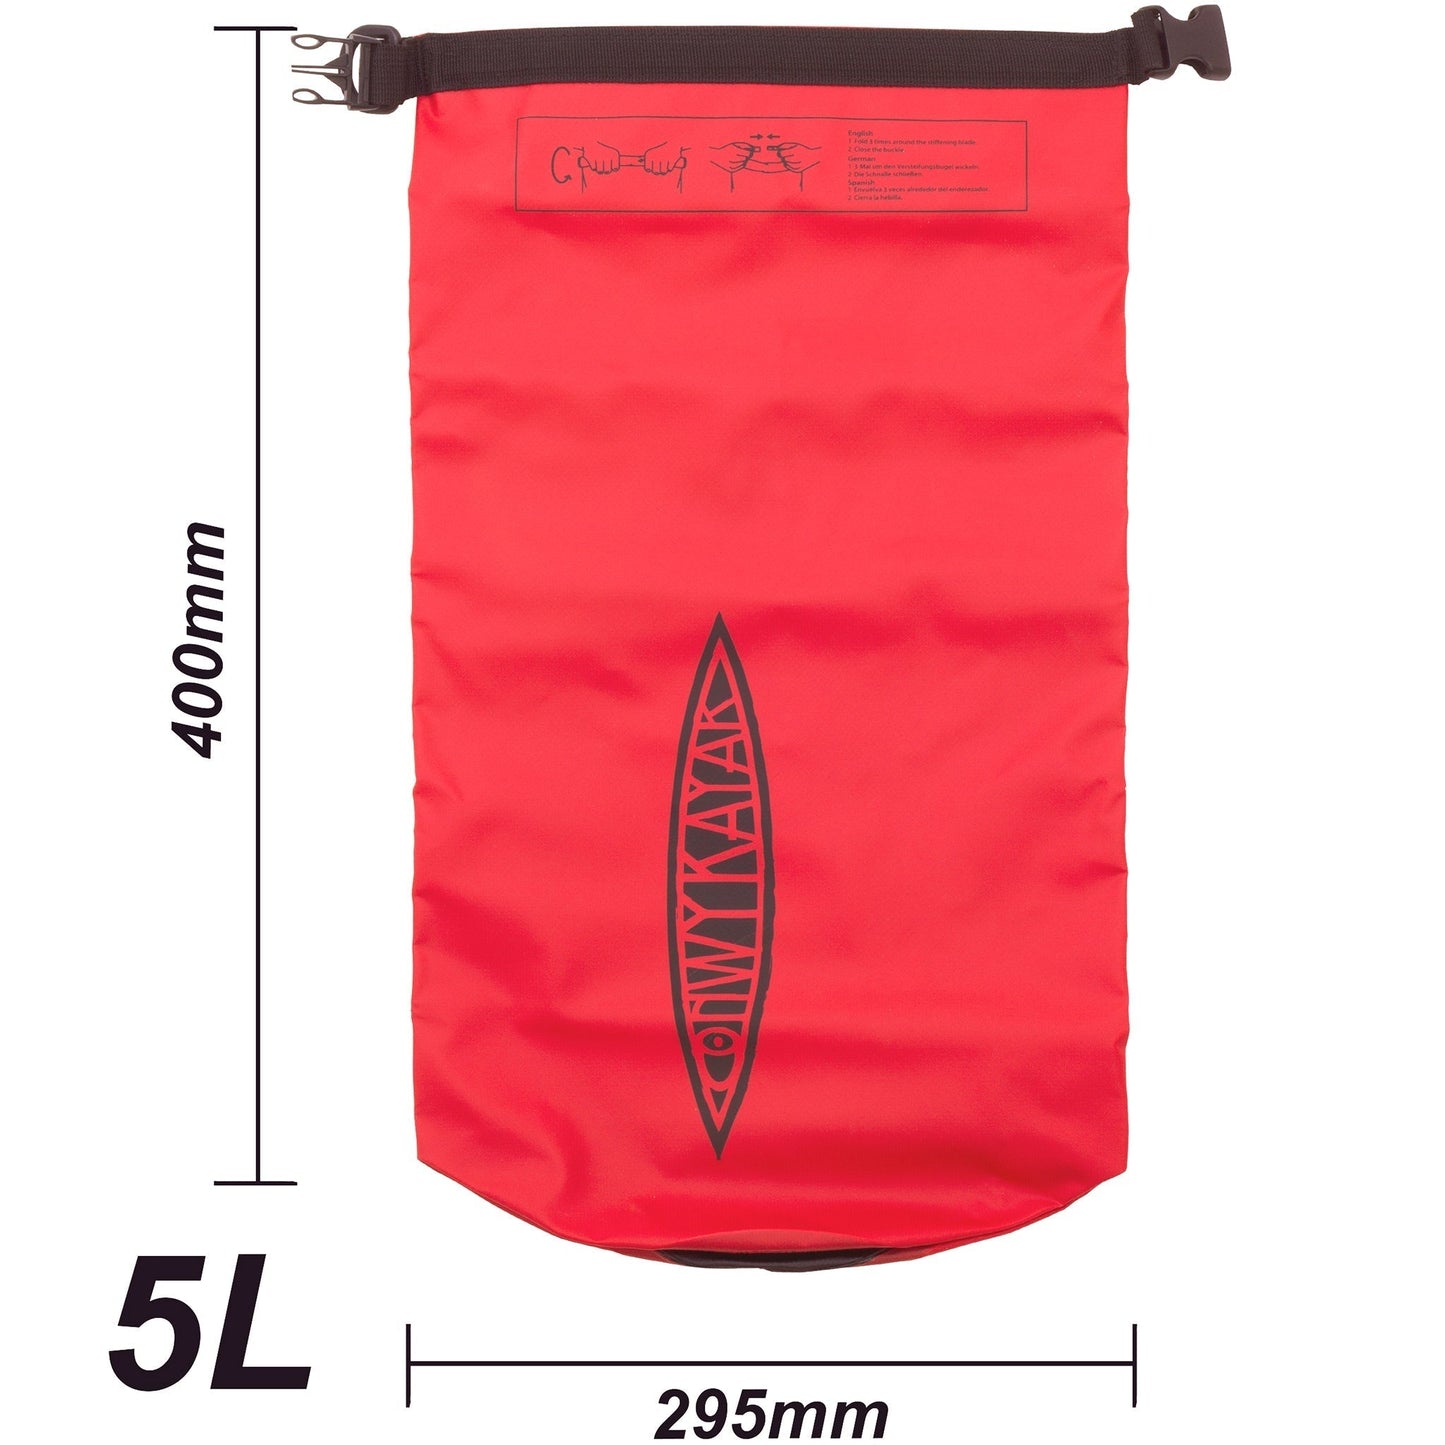 Conwy Kayaks - Heavy Duty Waterproof Dry Bag - 5L Volume | Conwy Kayaks